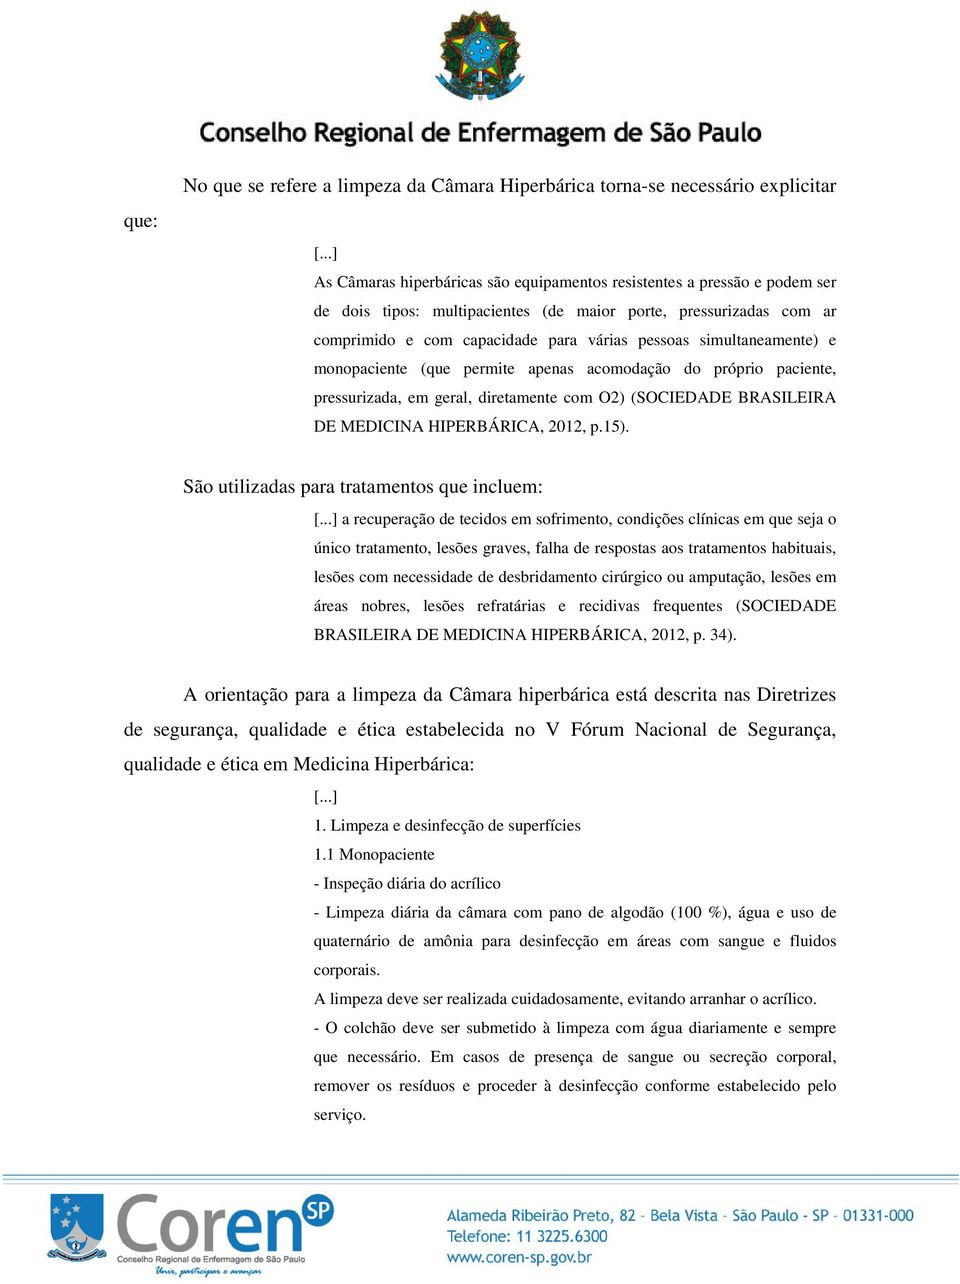 O2) (SOCIEDADE BRASILEIRA DE MEDICINA HIPERBÁRICA, 2012, p.15).